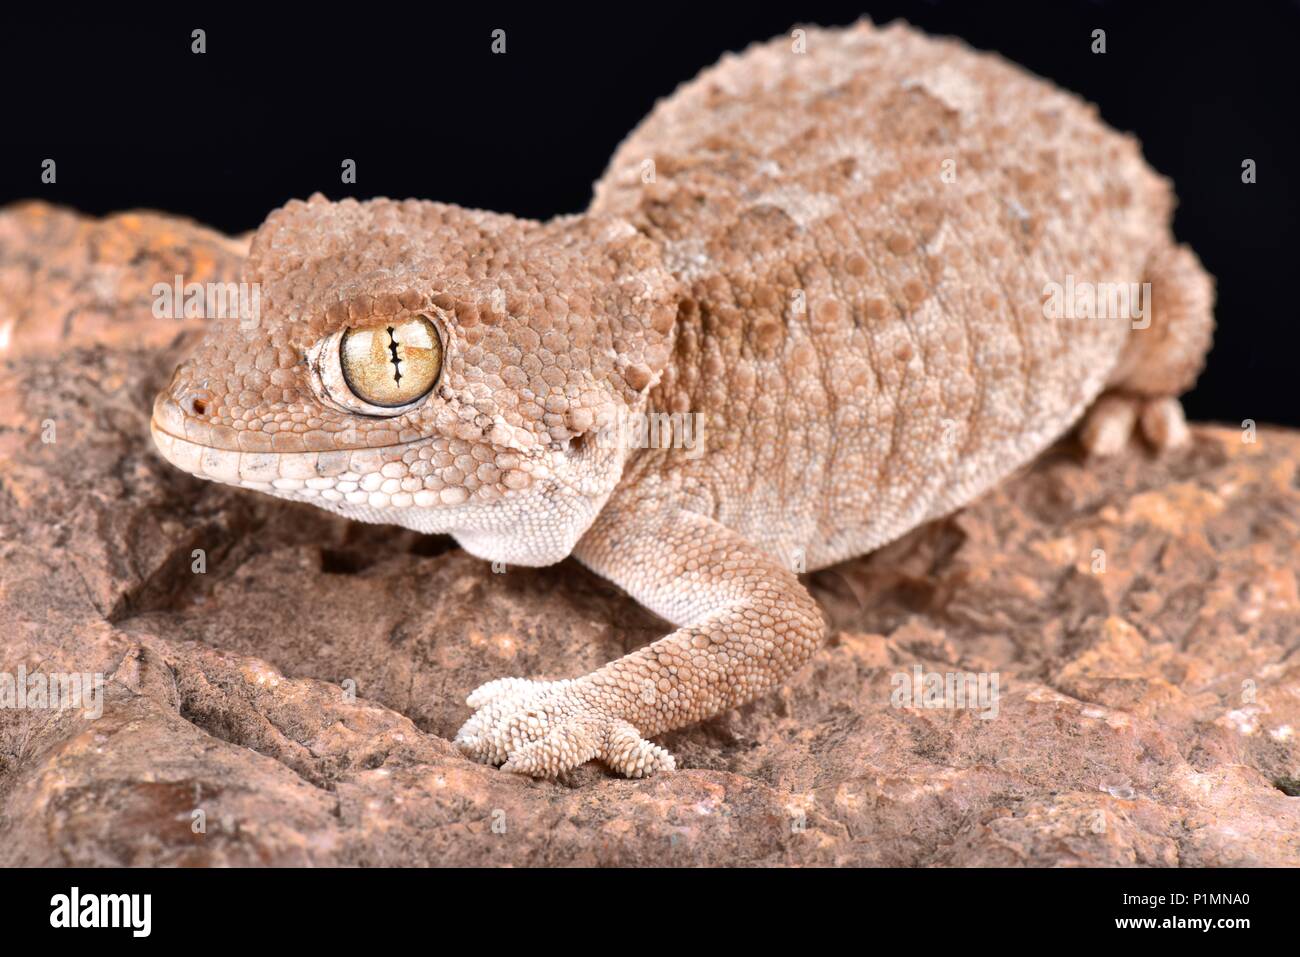 Le gecko casqué (Tarentola chazaliae) est originaire du Sahara occidental, la Mauritanie et le Maroc dans les zones près de la côte où l'humidité est élevée. Banque D'Images